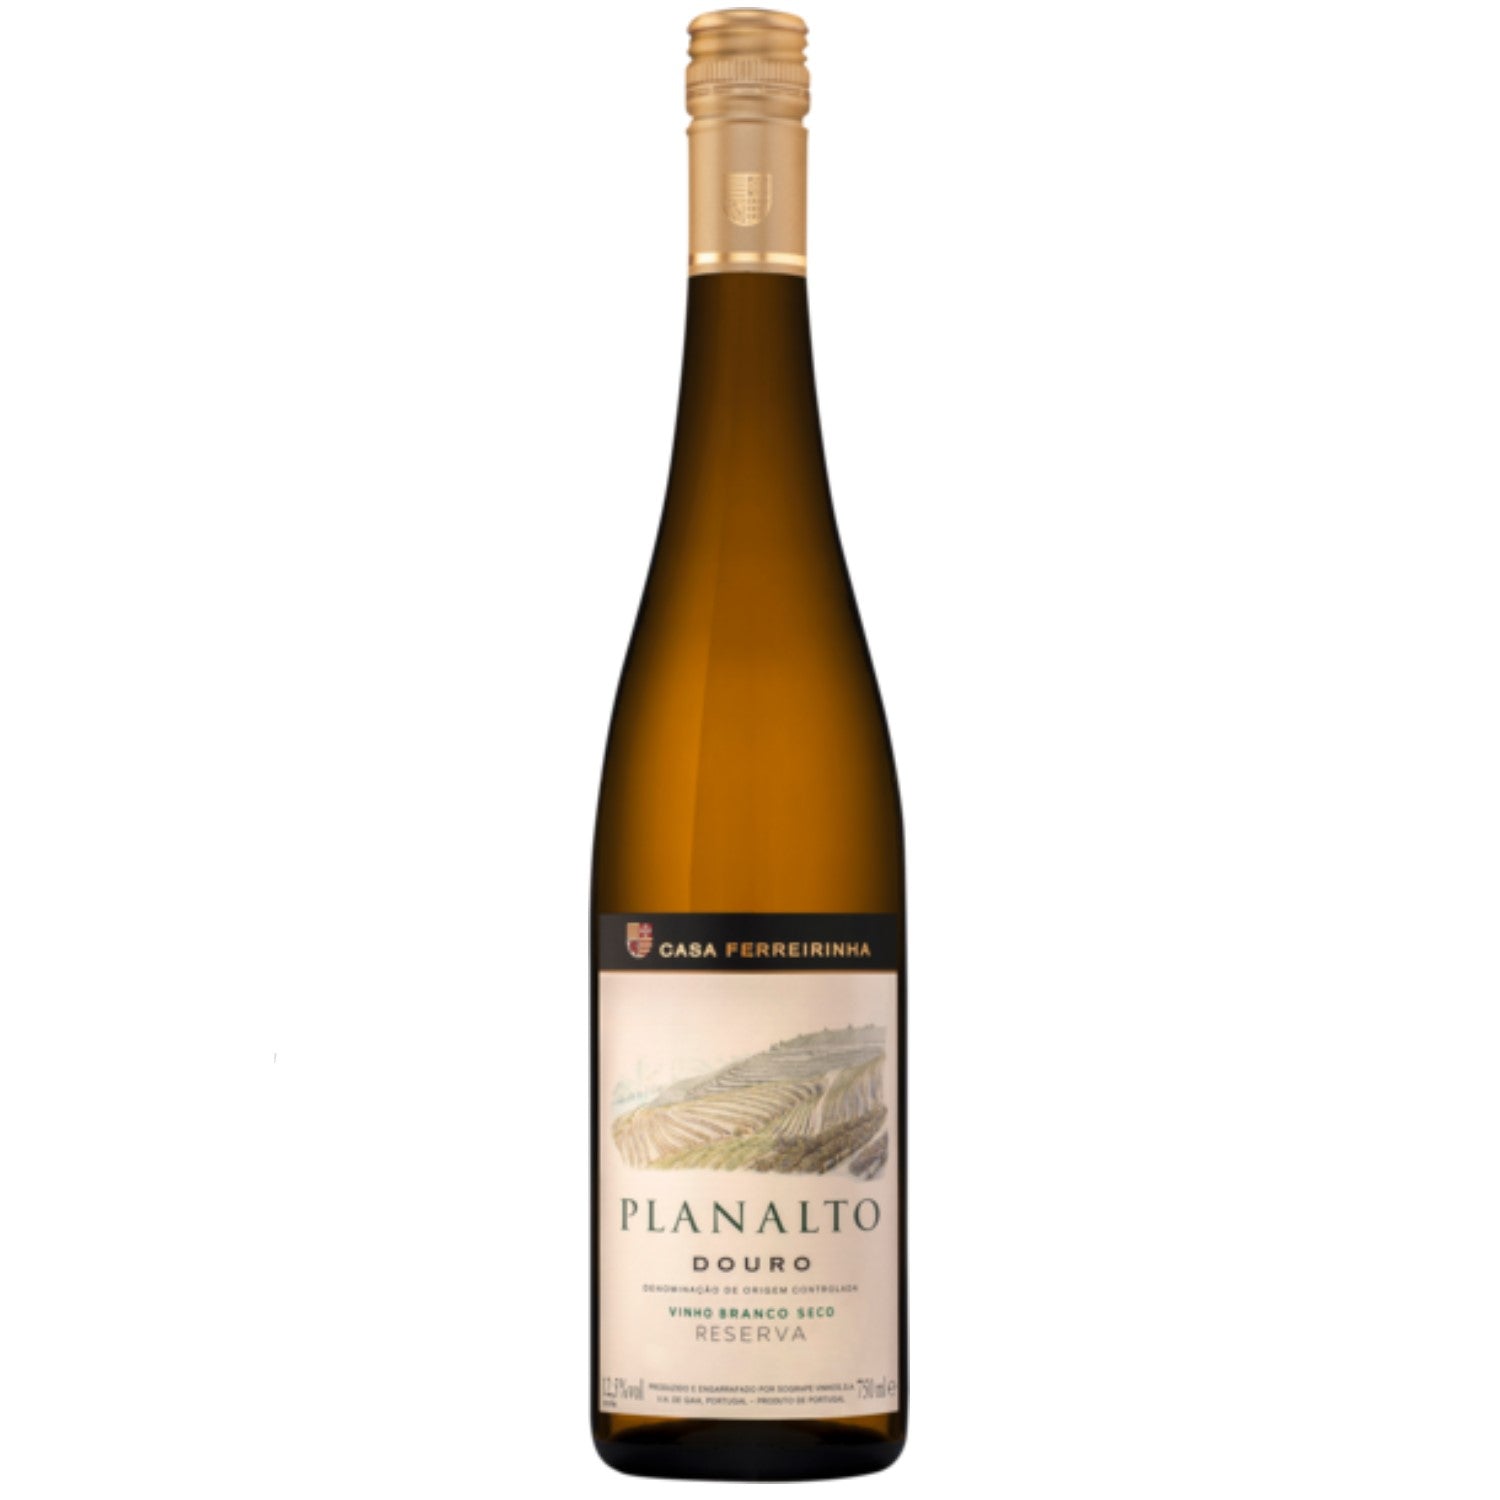 Casa Ferreirinha Planalto Reserva Douro Weißwein Wein trocken DOP Portugal (3 x 0.75l) - Versanel -